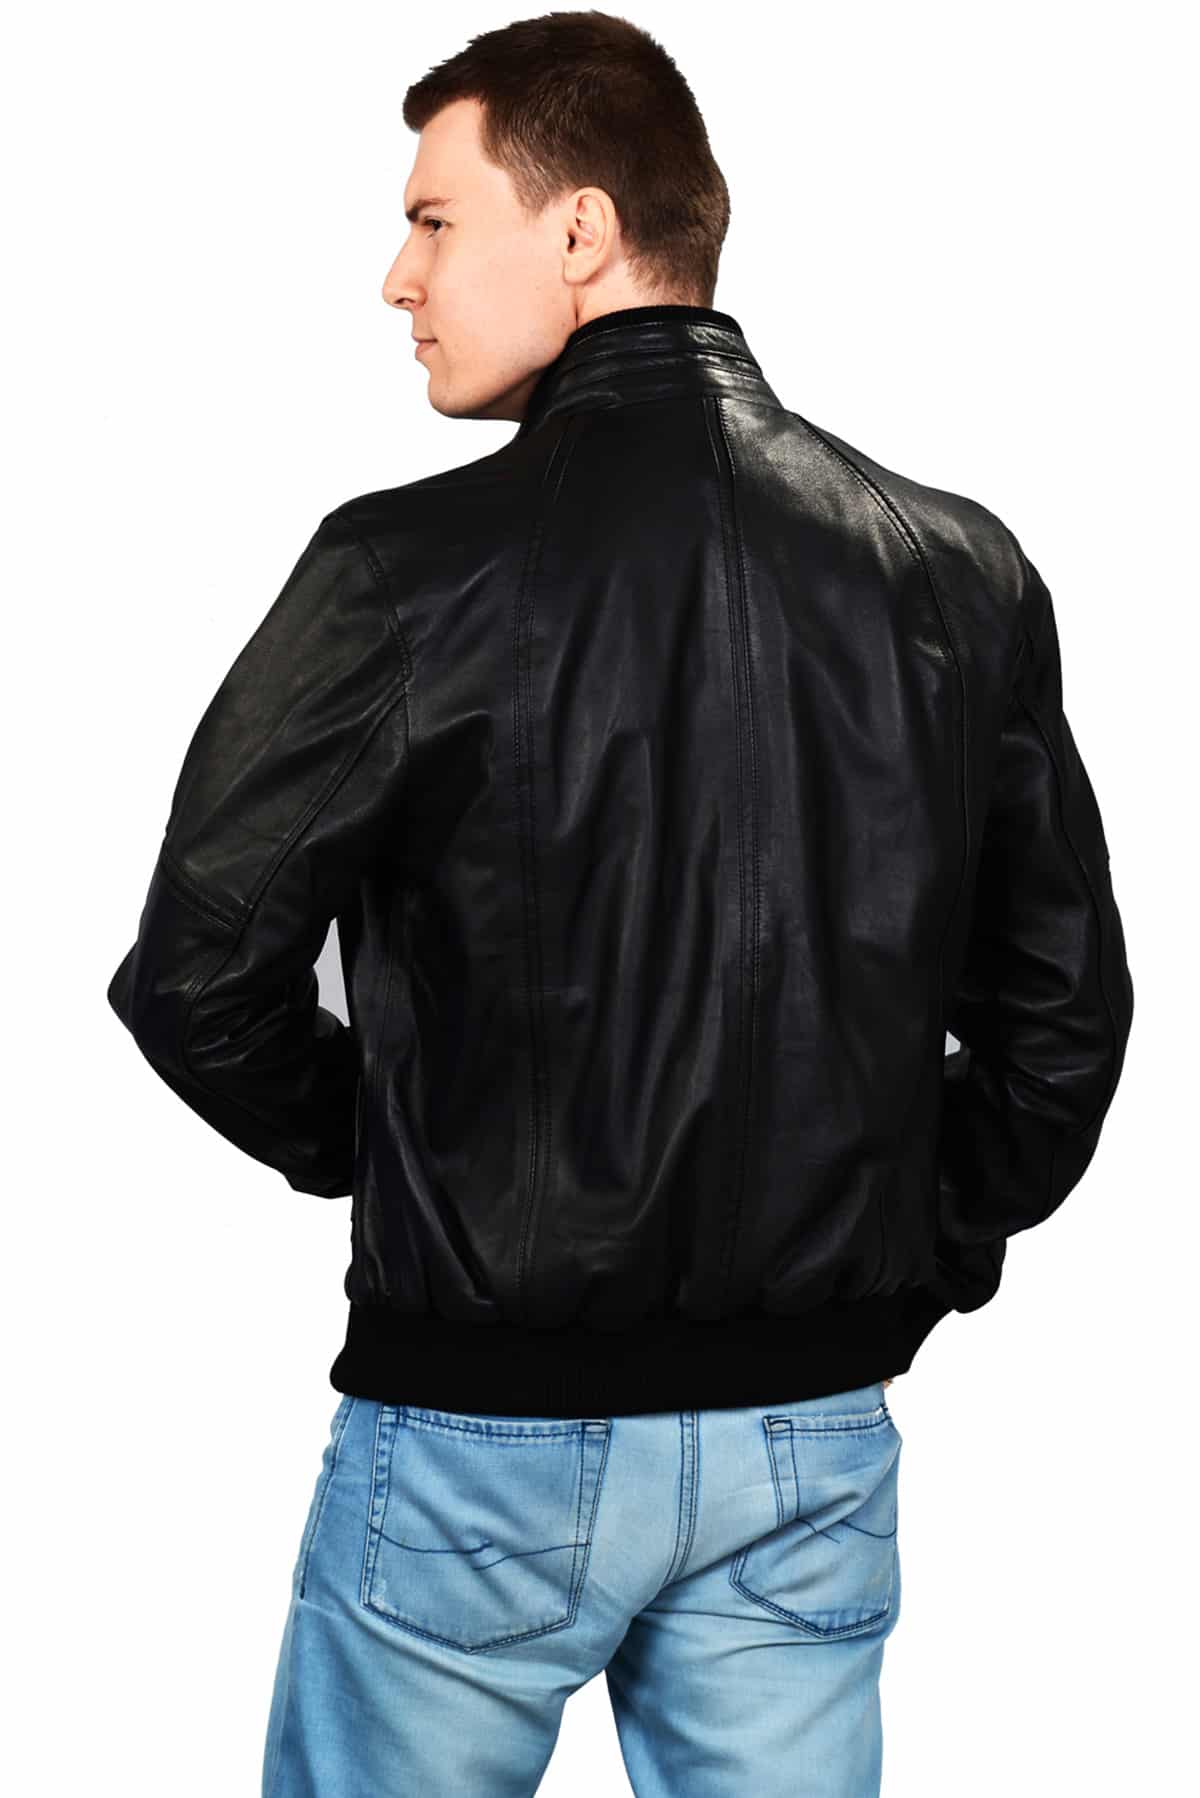 men's cognac leather jacket